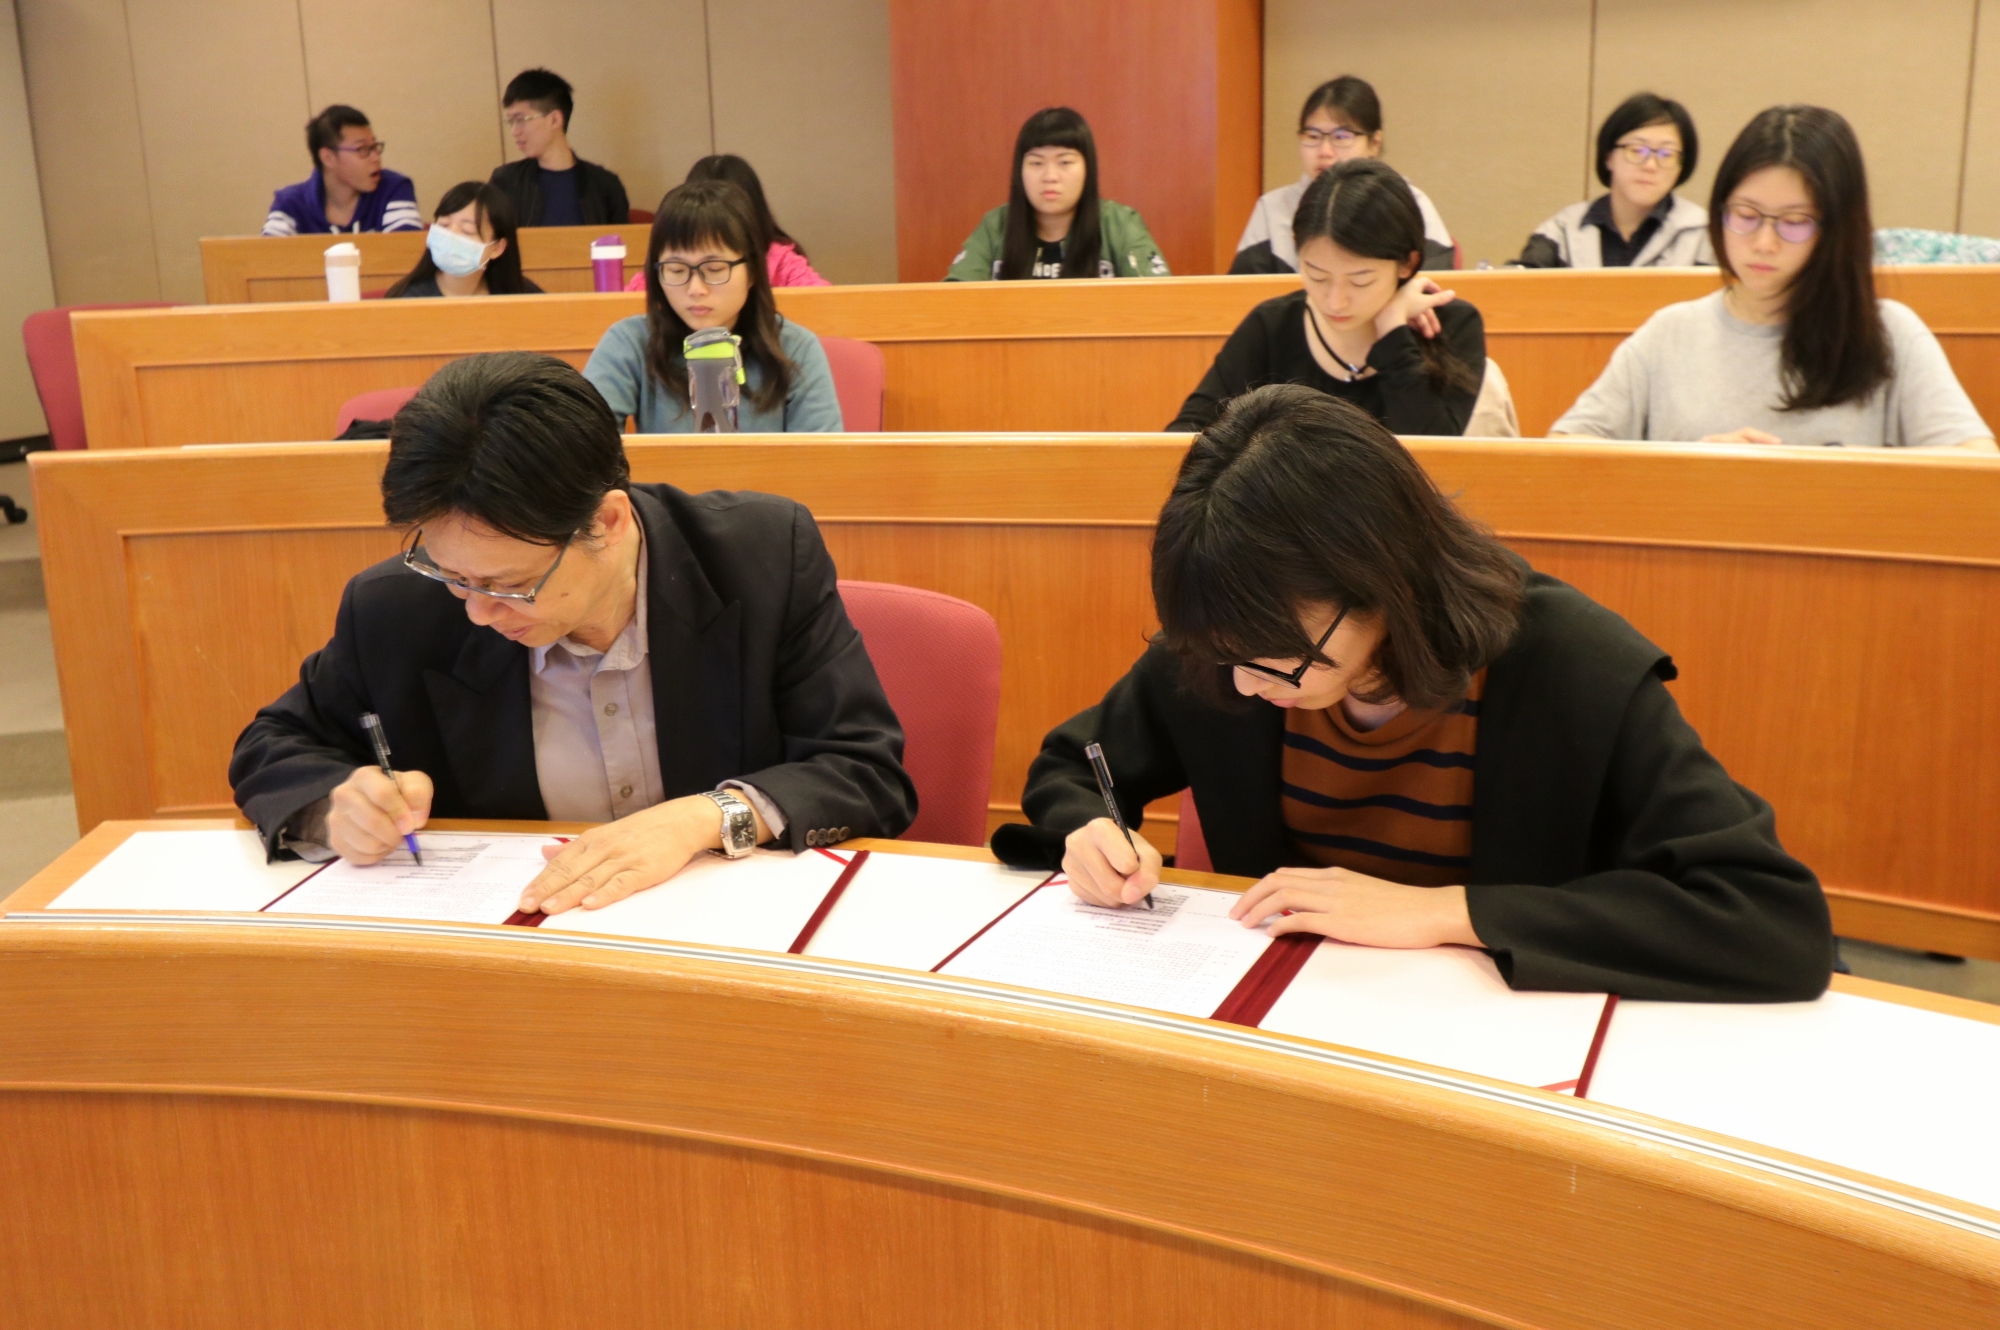 亞大附醫人事室陳昭偉主任(左)與護理系學生代表吳家綺簽訂獎助學金合約書。